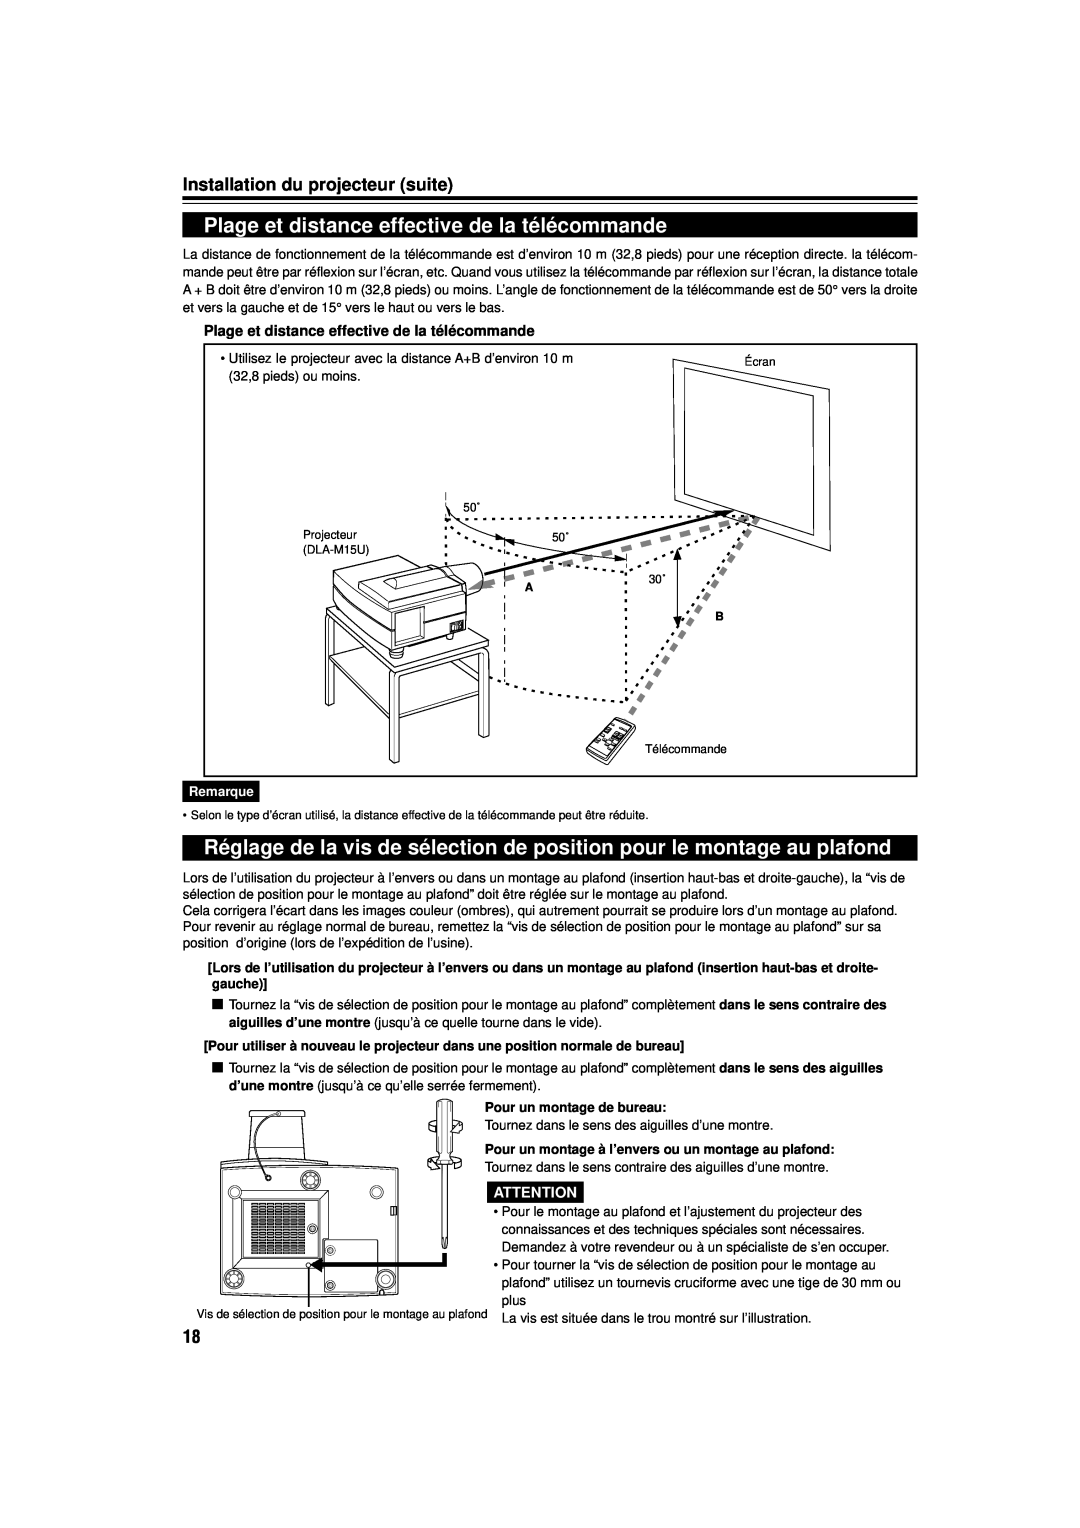 JVC DLA-M15U manual Plage et distance effective de la télécommande, Installation du projecteur suite, Remarque 